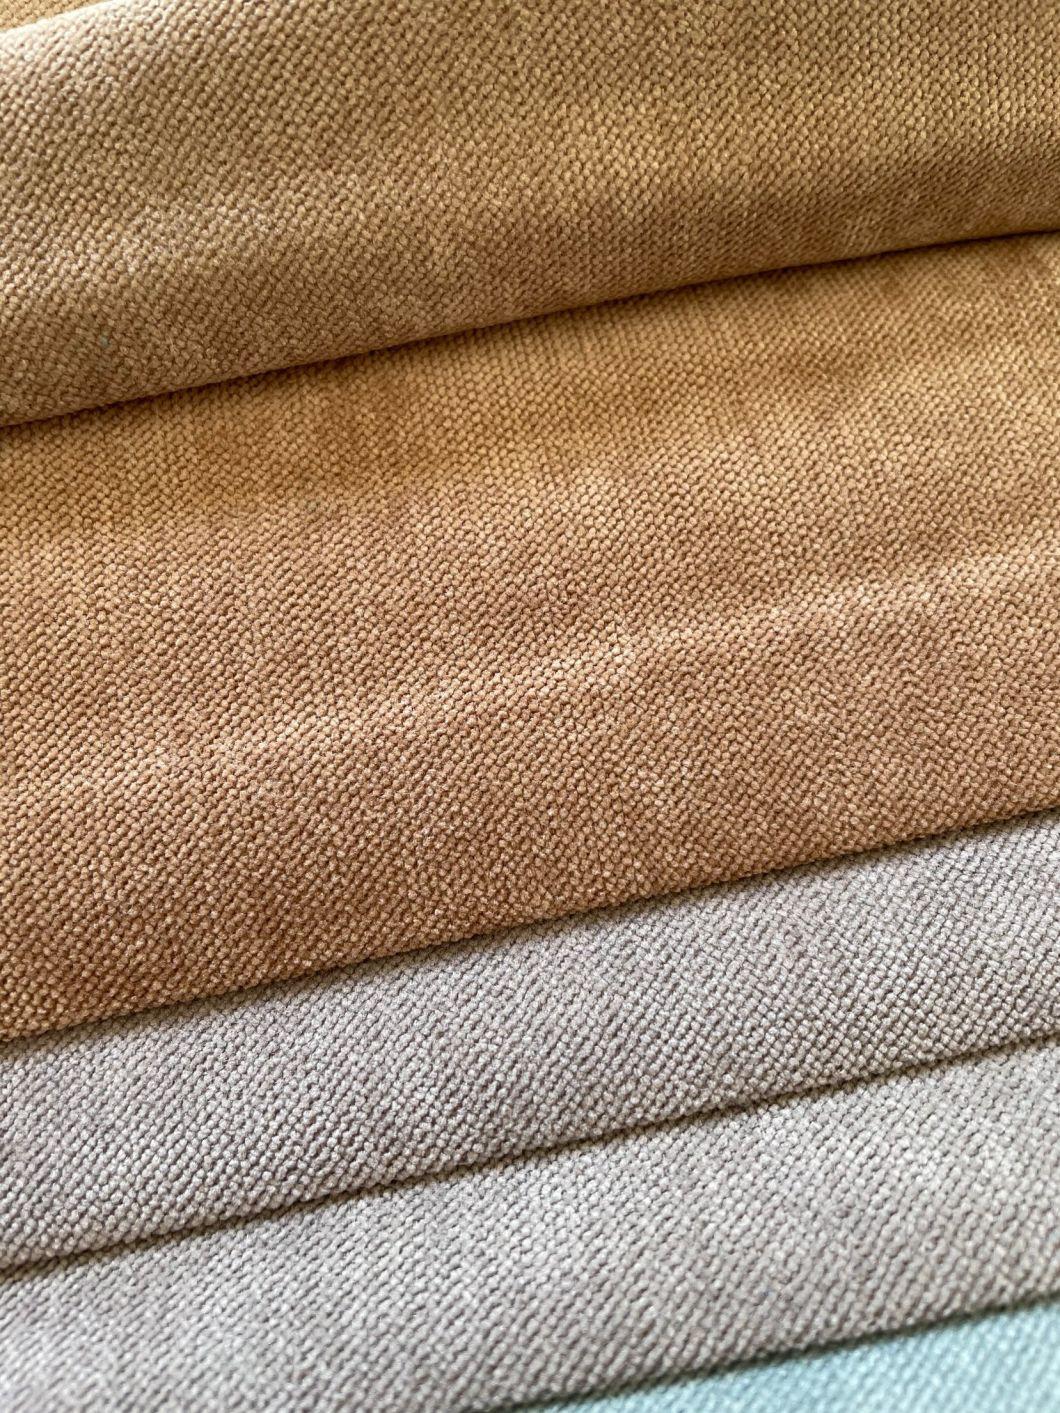 Sofa Fabric Ready Goods A79